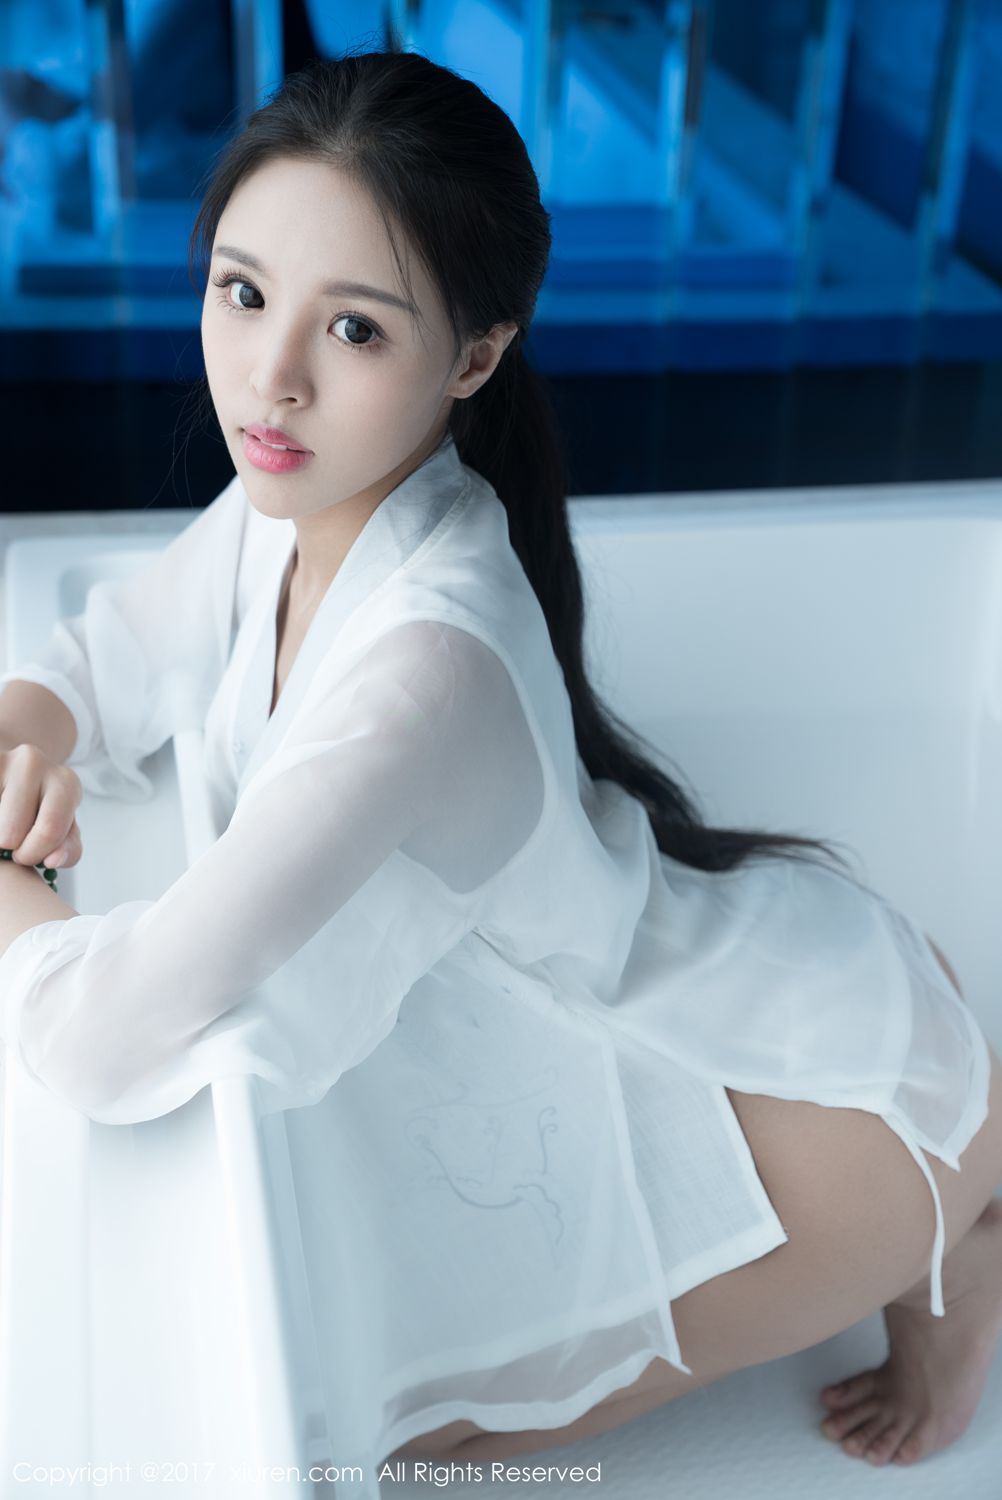 美女模特杨果果(韩秀冉)浴室大尺度首套写真